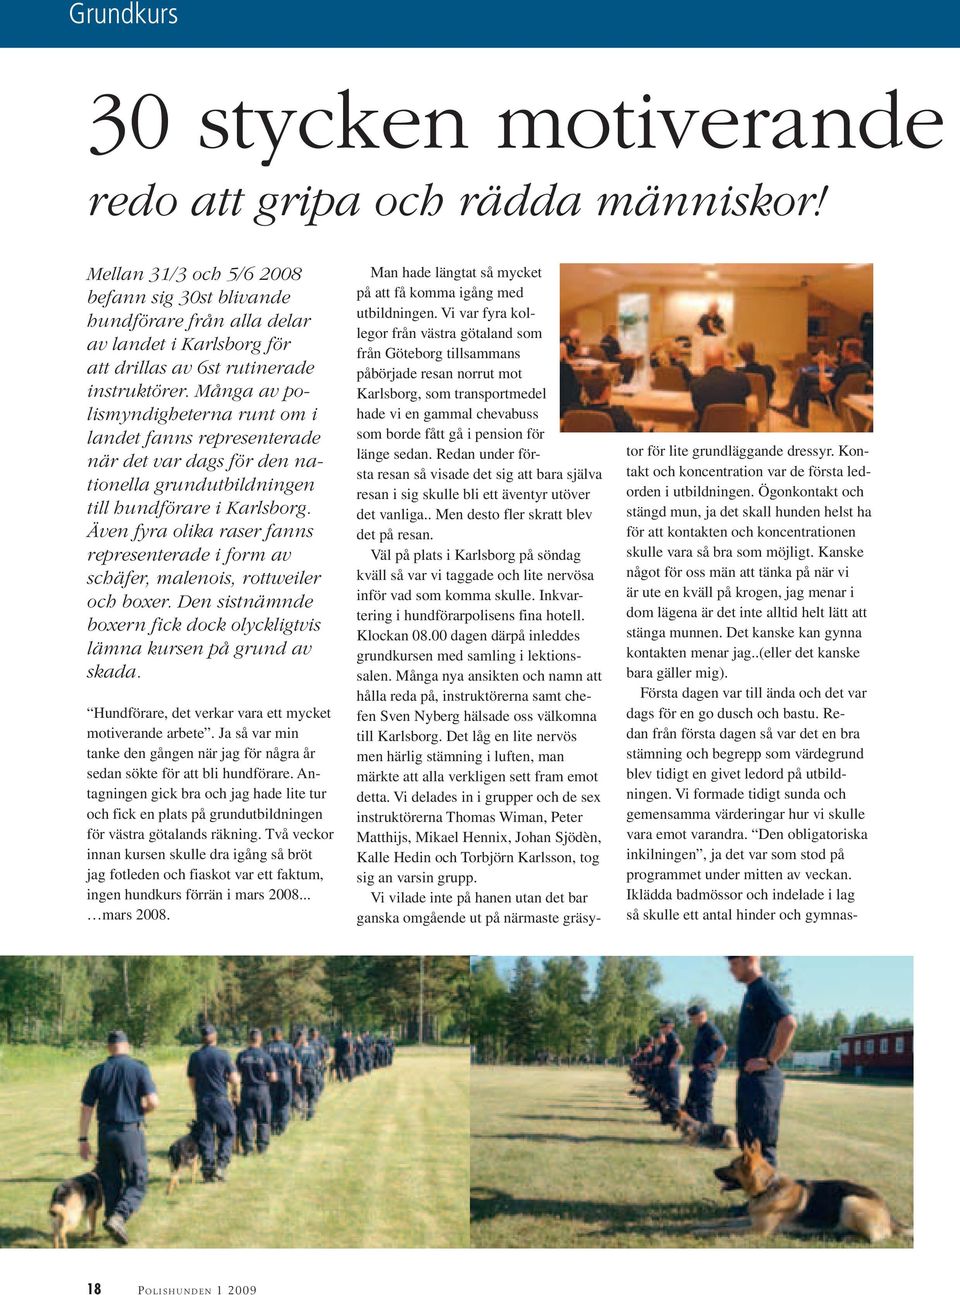 Många av polismyndigheterna runt om i landet fanns representerade när det var dags för den nationella grundutbildningen till hundförare i Karlsborg.